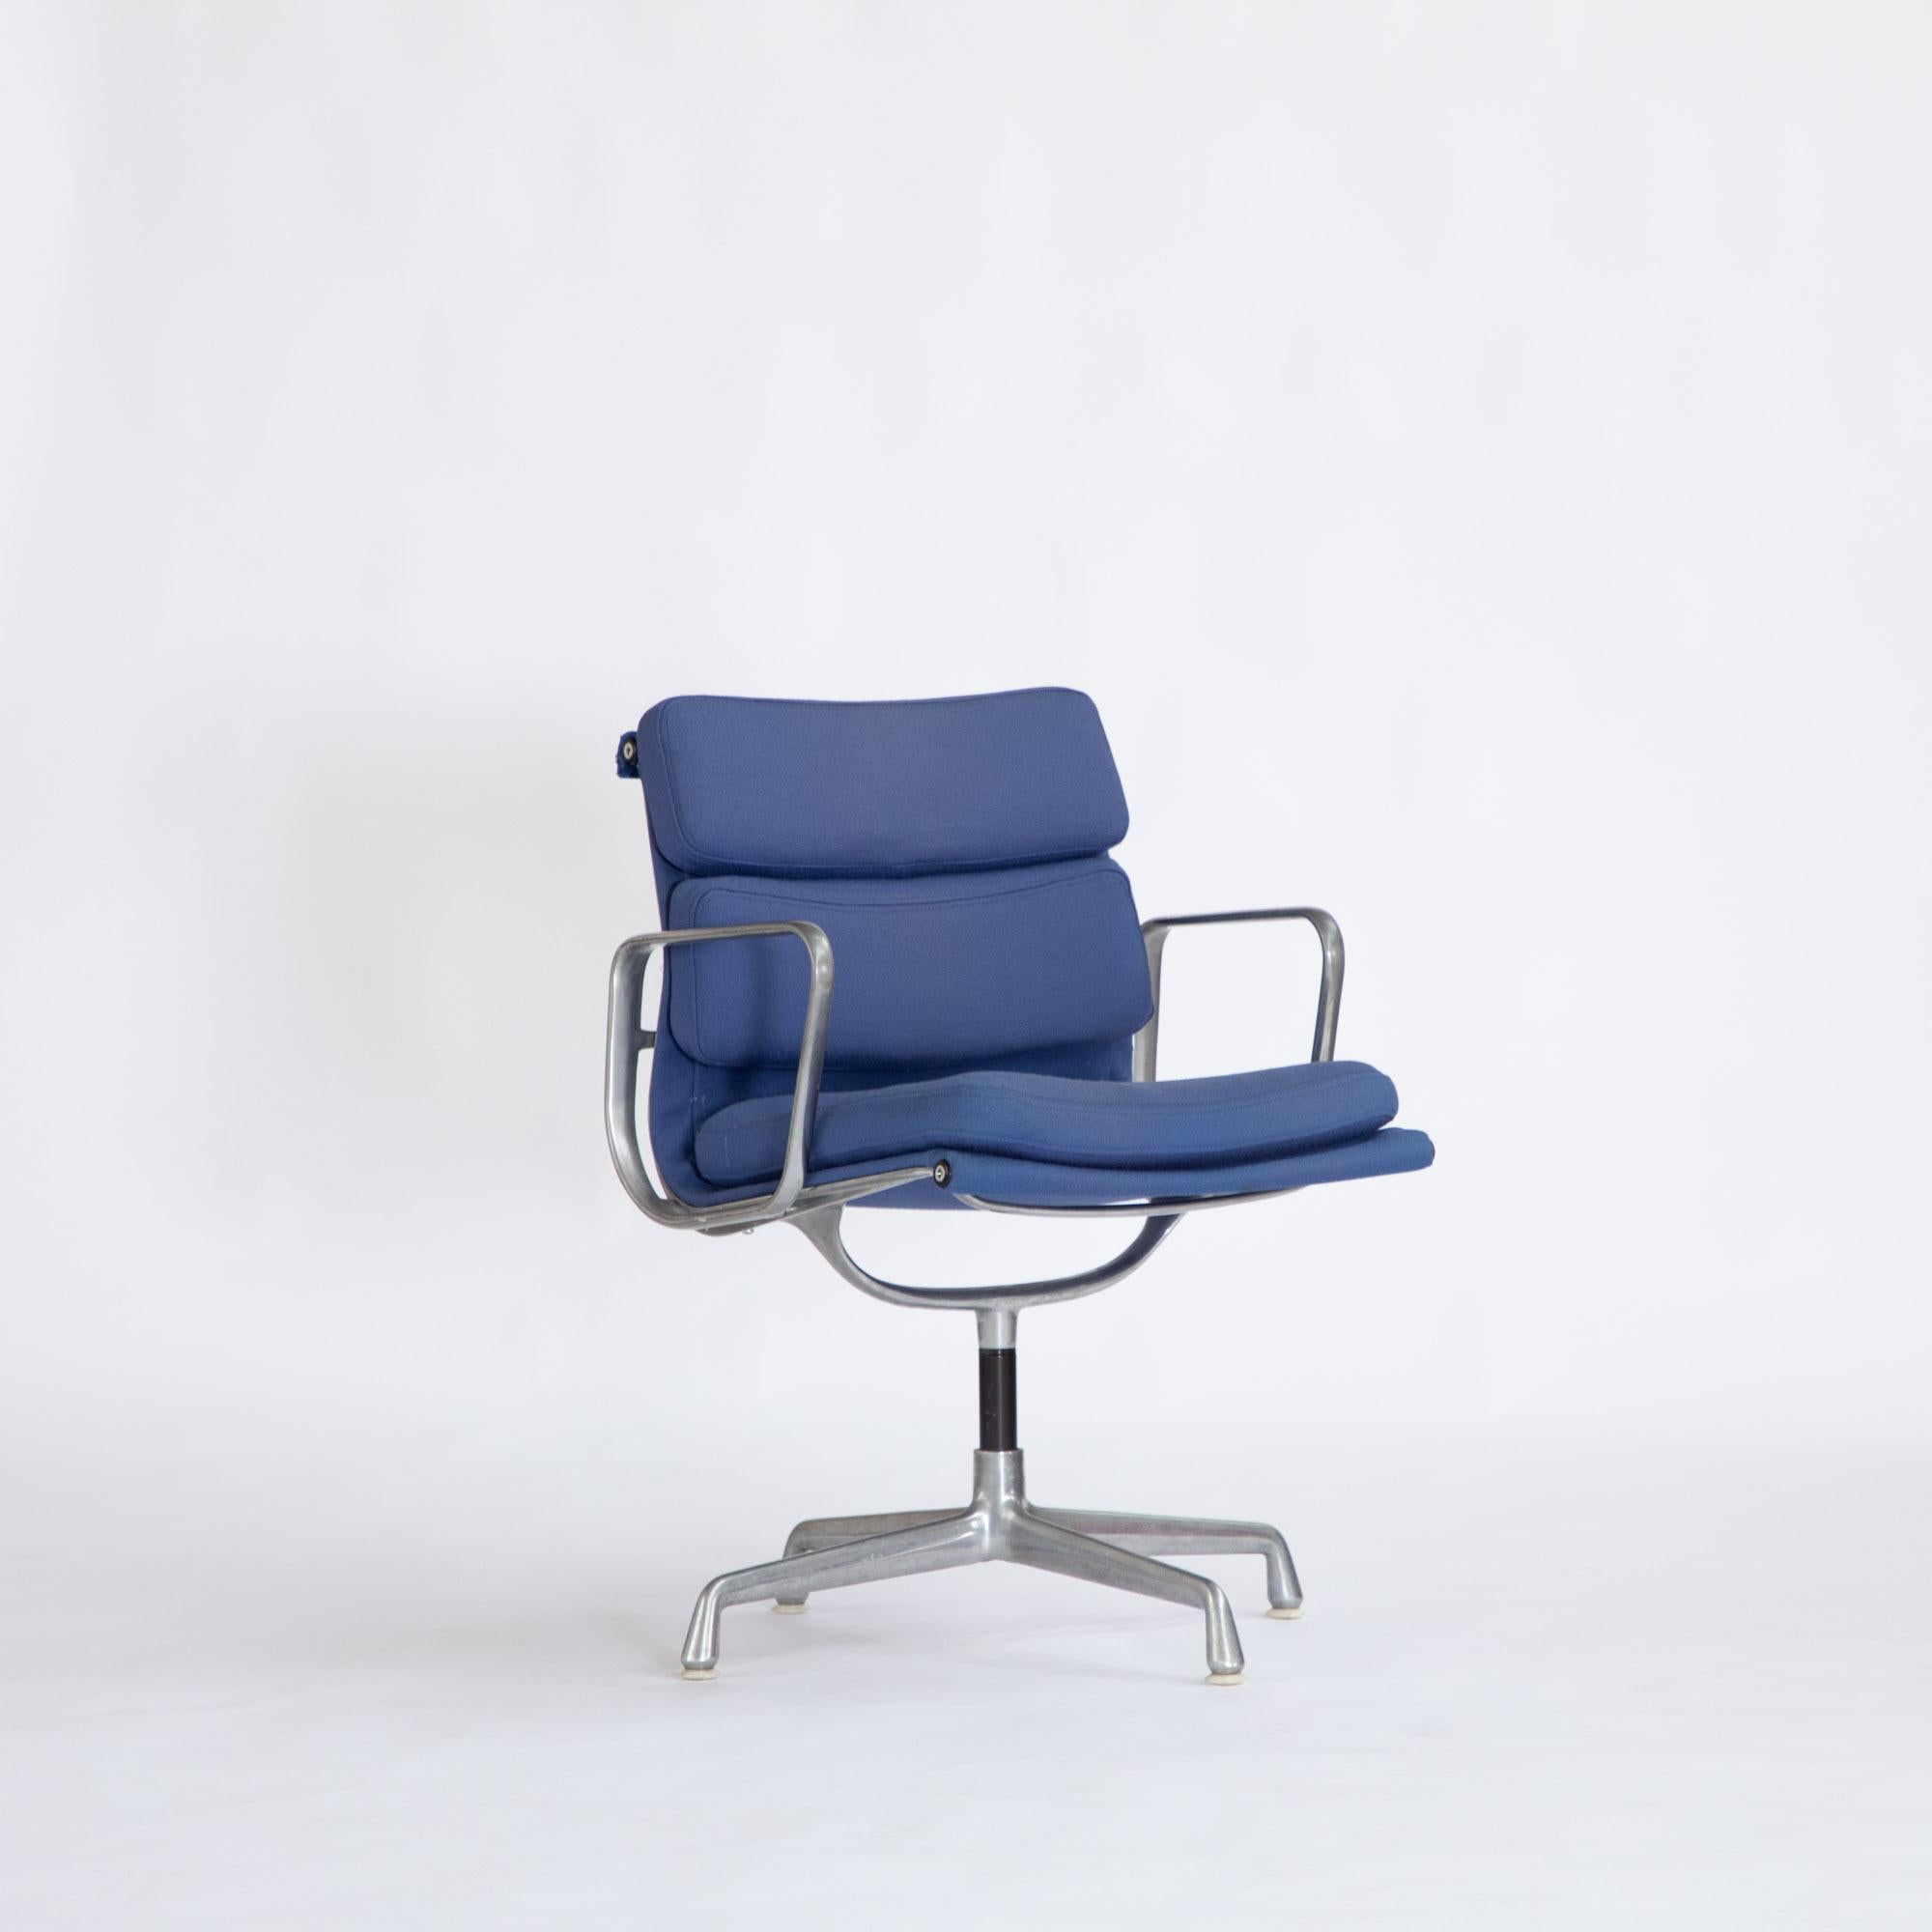 Großartiges Beispiel für den EA208, entworfen von Charles und Ray Eames im Jahr 1969.
Hergestellt von Herman Miller USA zwischen 1973-75
Feste Sitzhöhe
Drehbarer Sitz auf einem 4-Stern-Aluminiumrahmen. Einige leichte Abnutzung des Rahmens im